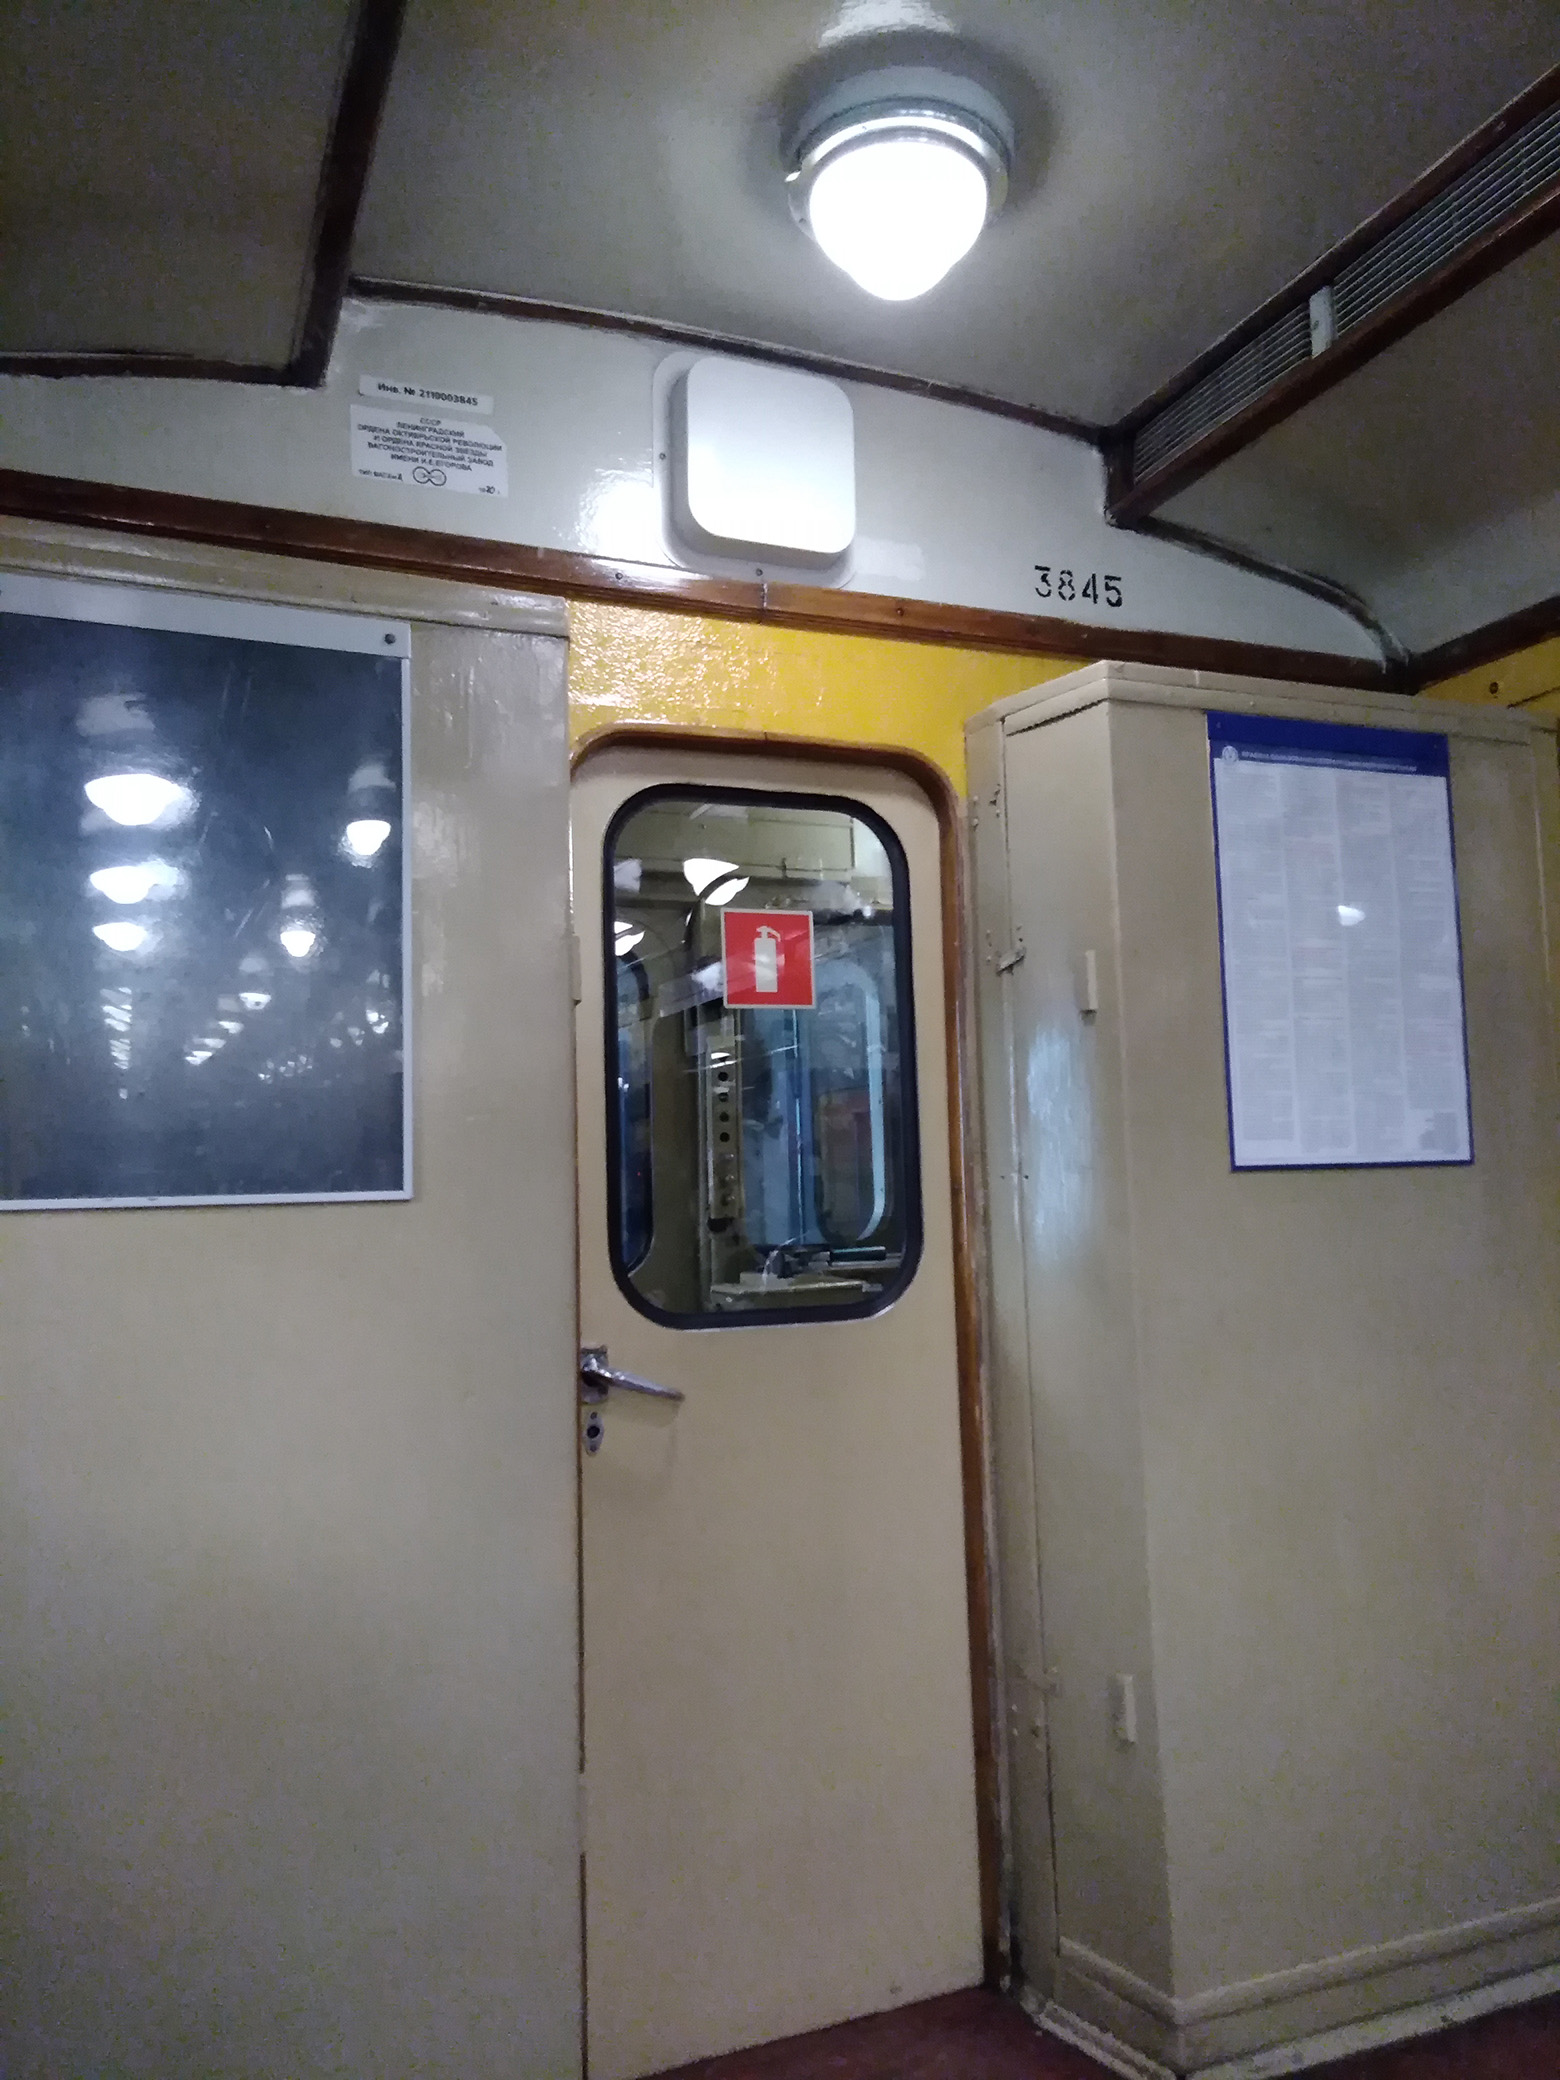 Петербургский метрополитен вагон Ема №3845 —  фотографии, сделанные в 2019 году